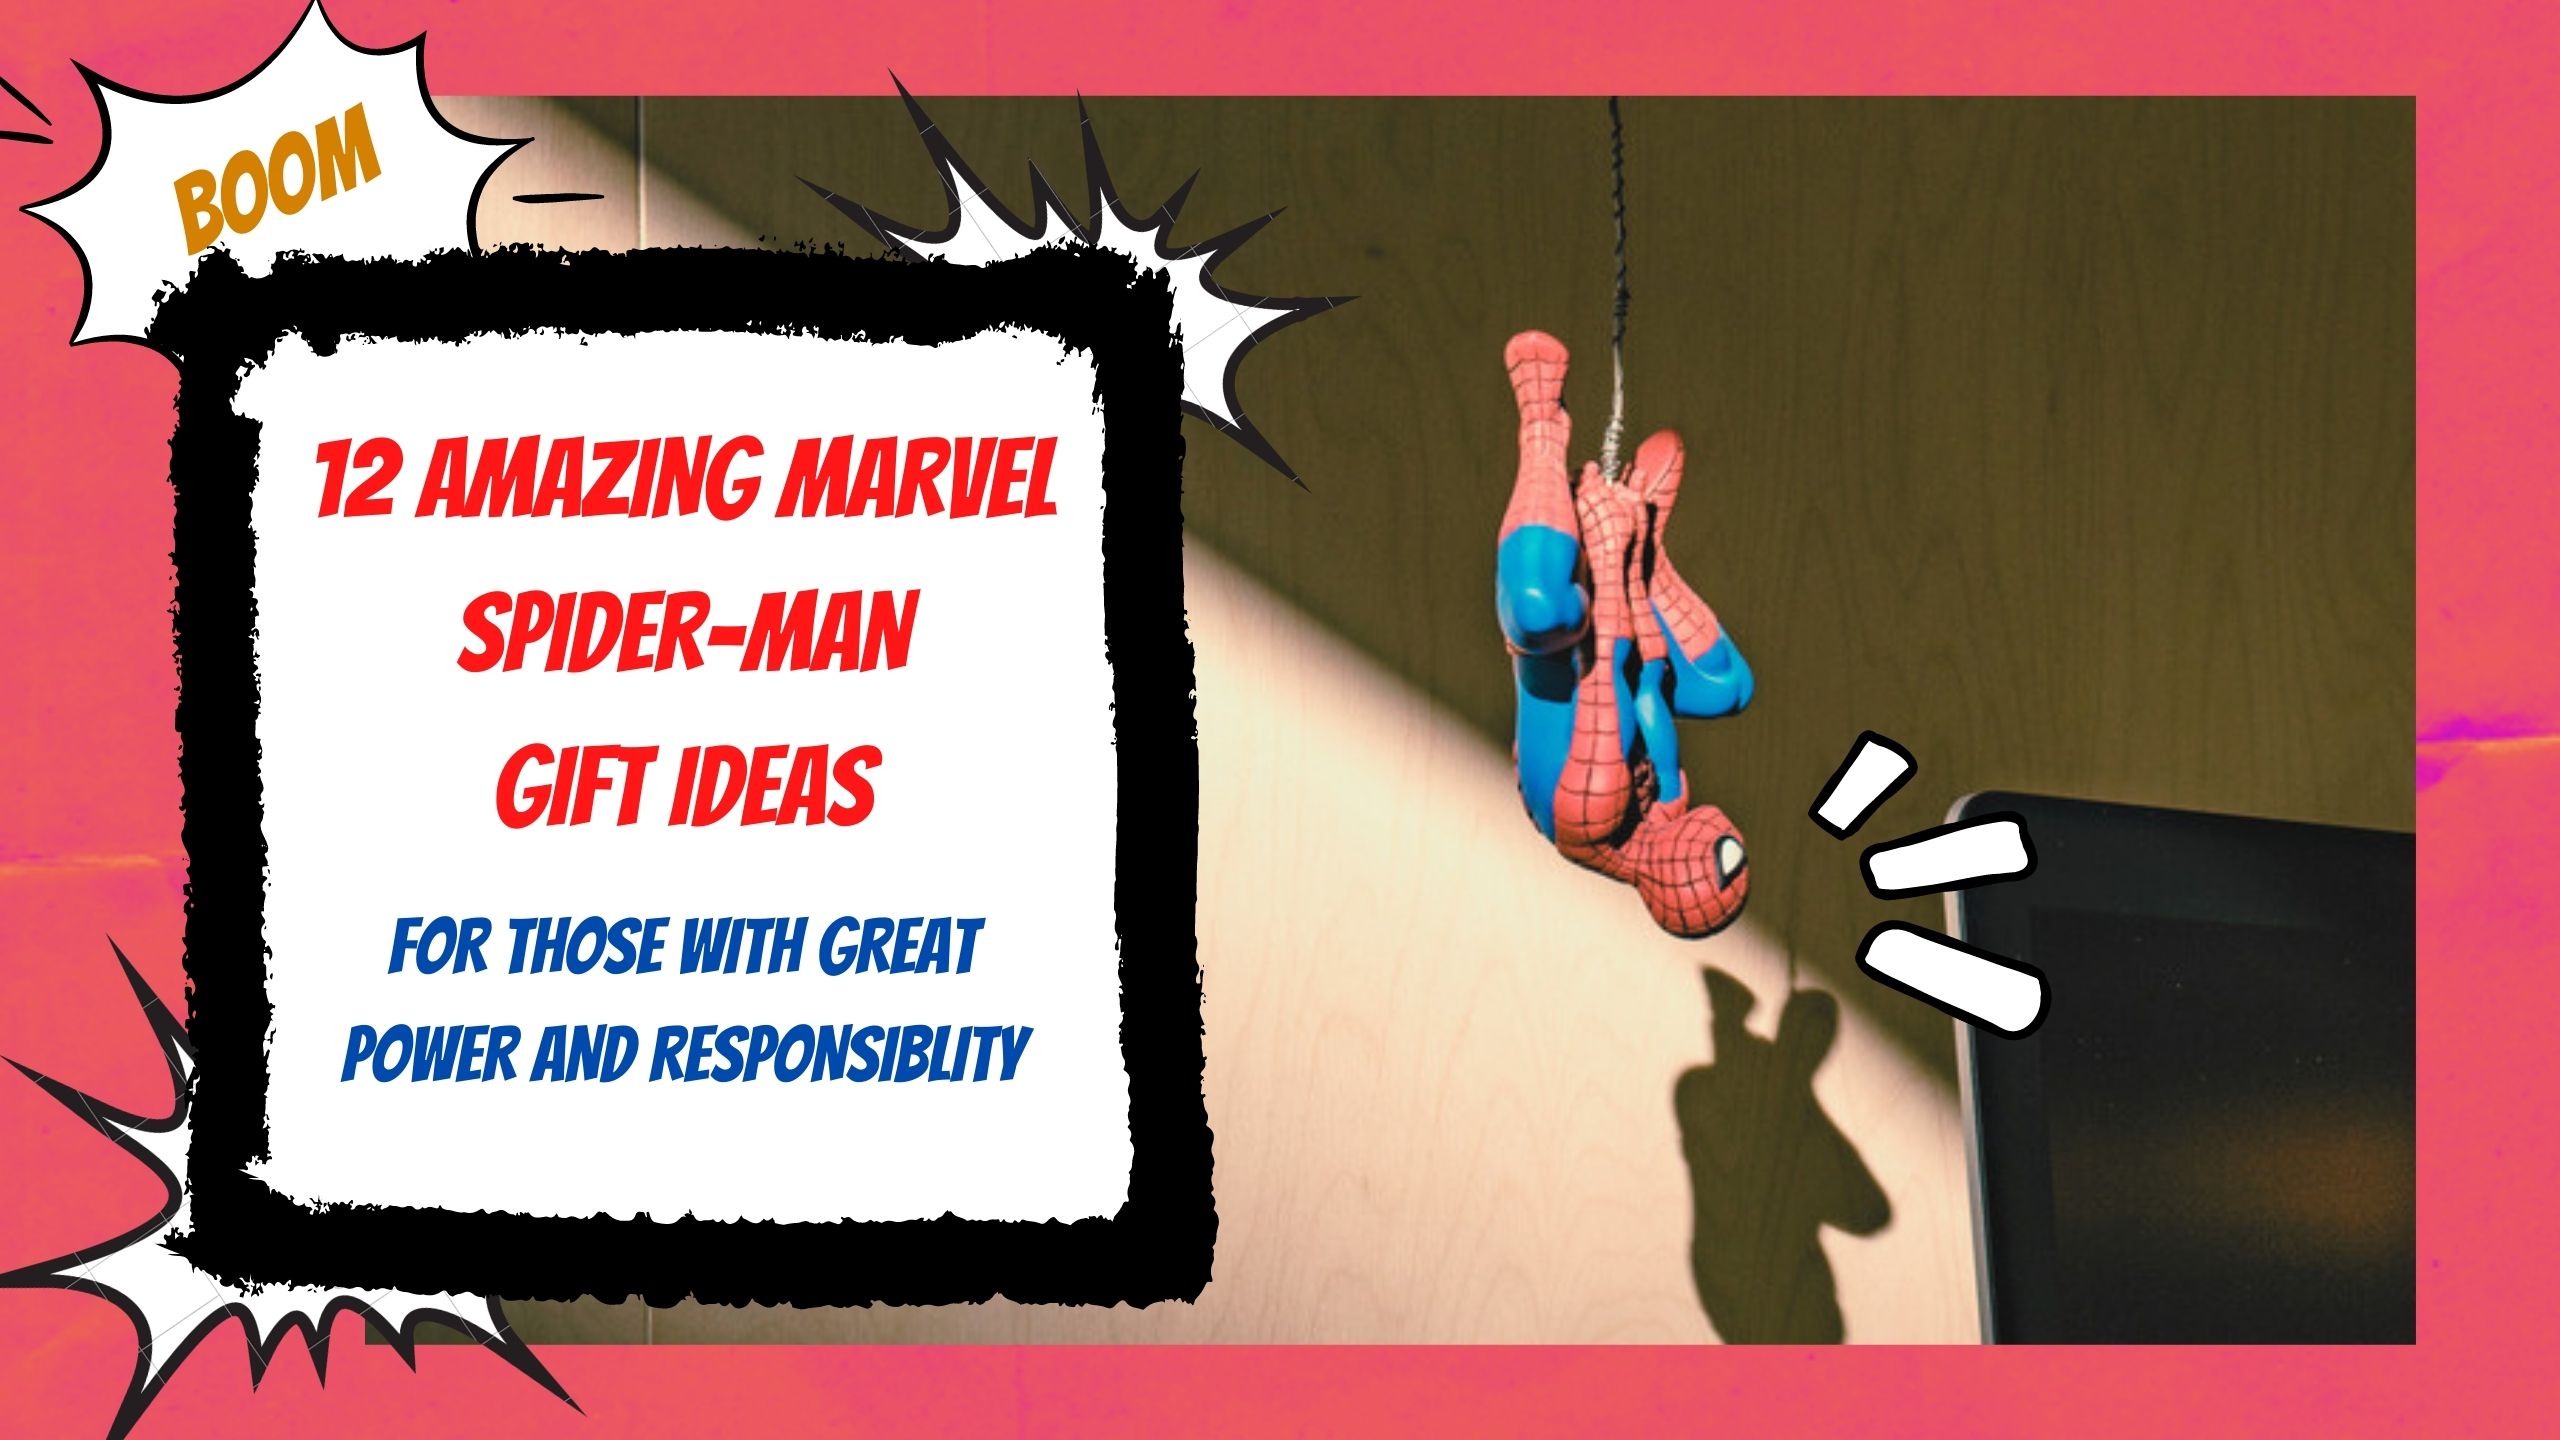 Amazing Marvel Spider-Man Gift Ideas Header